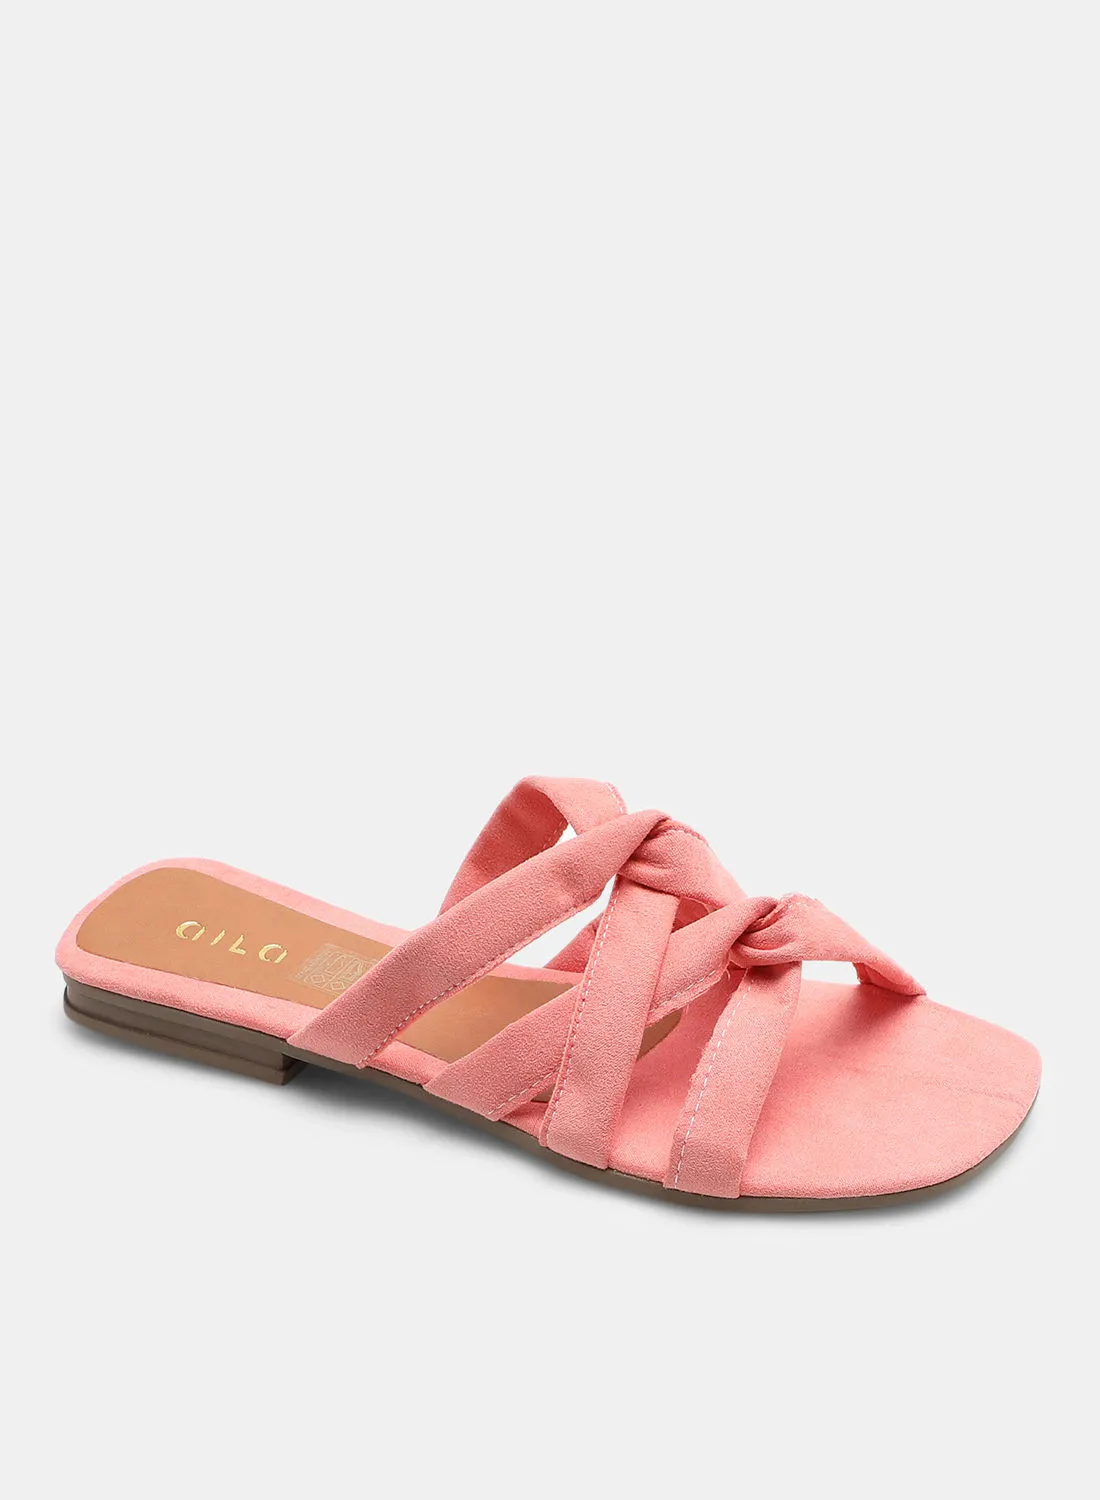 Aila Casual Plain Flat Sandals Peach